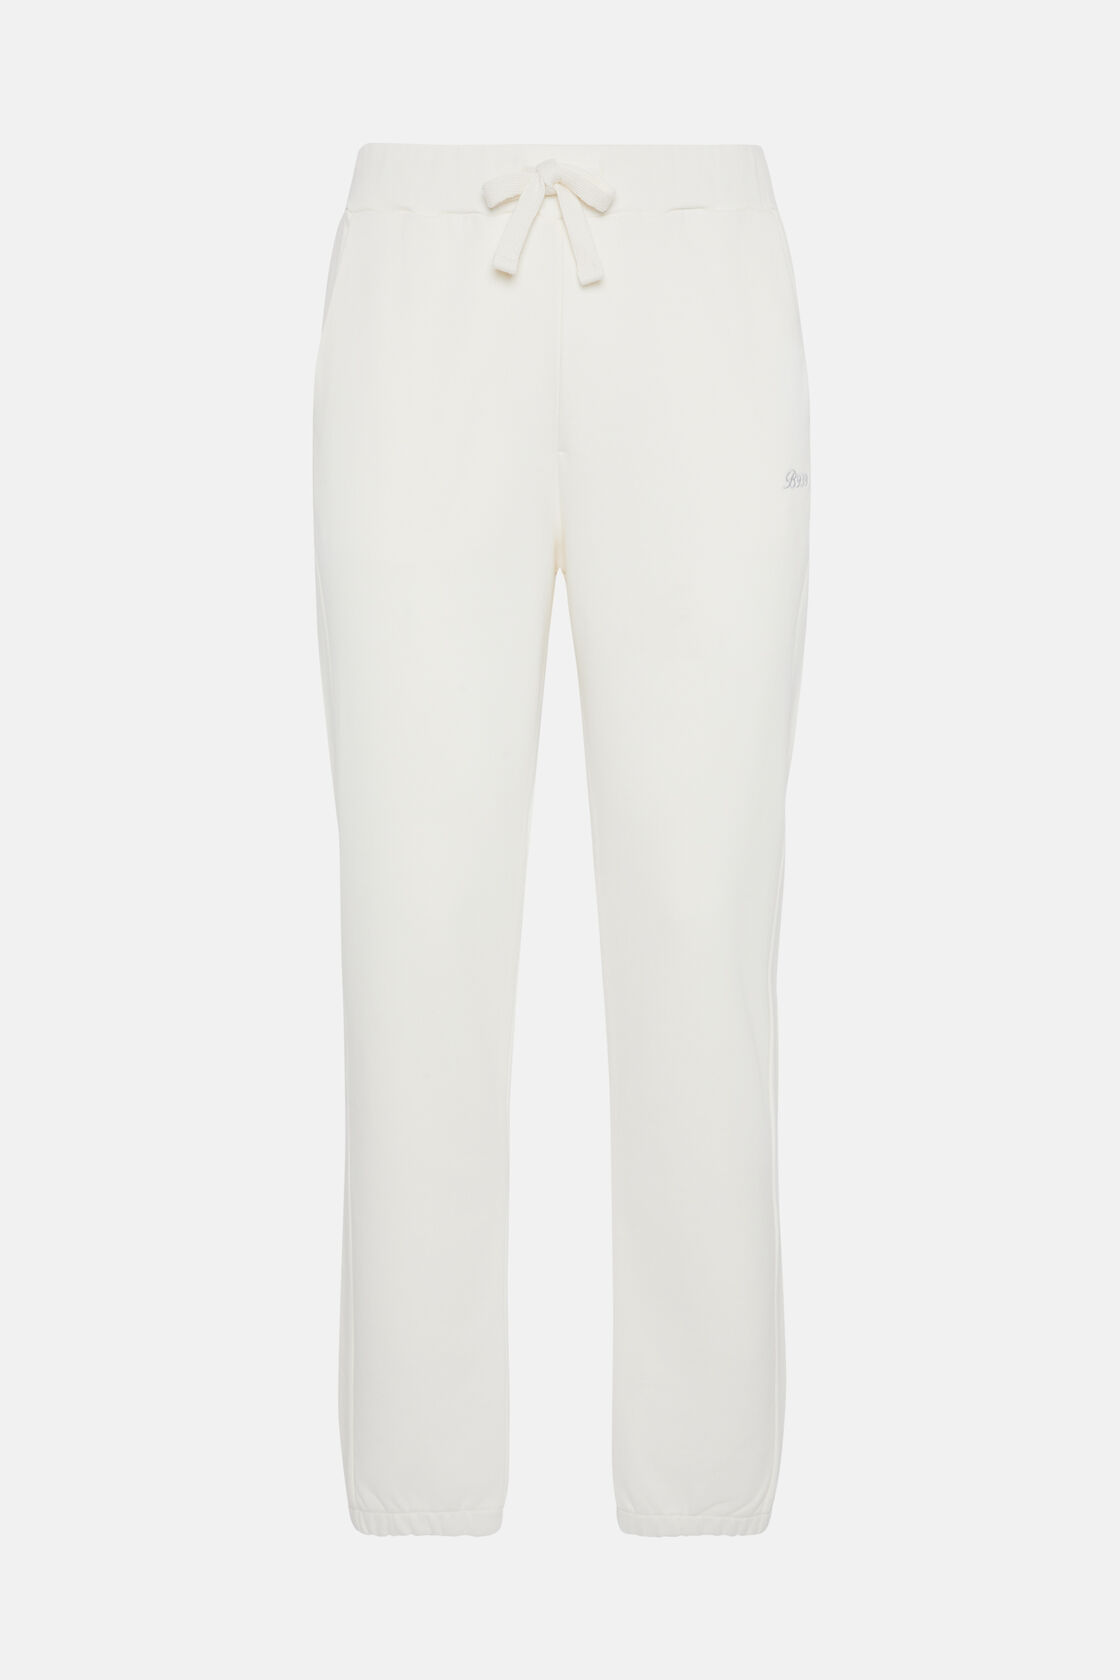 Pantalon En Coton Mélangé Bio, Blanc, hi-res